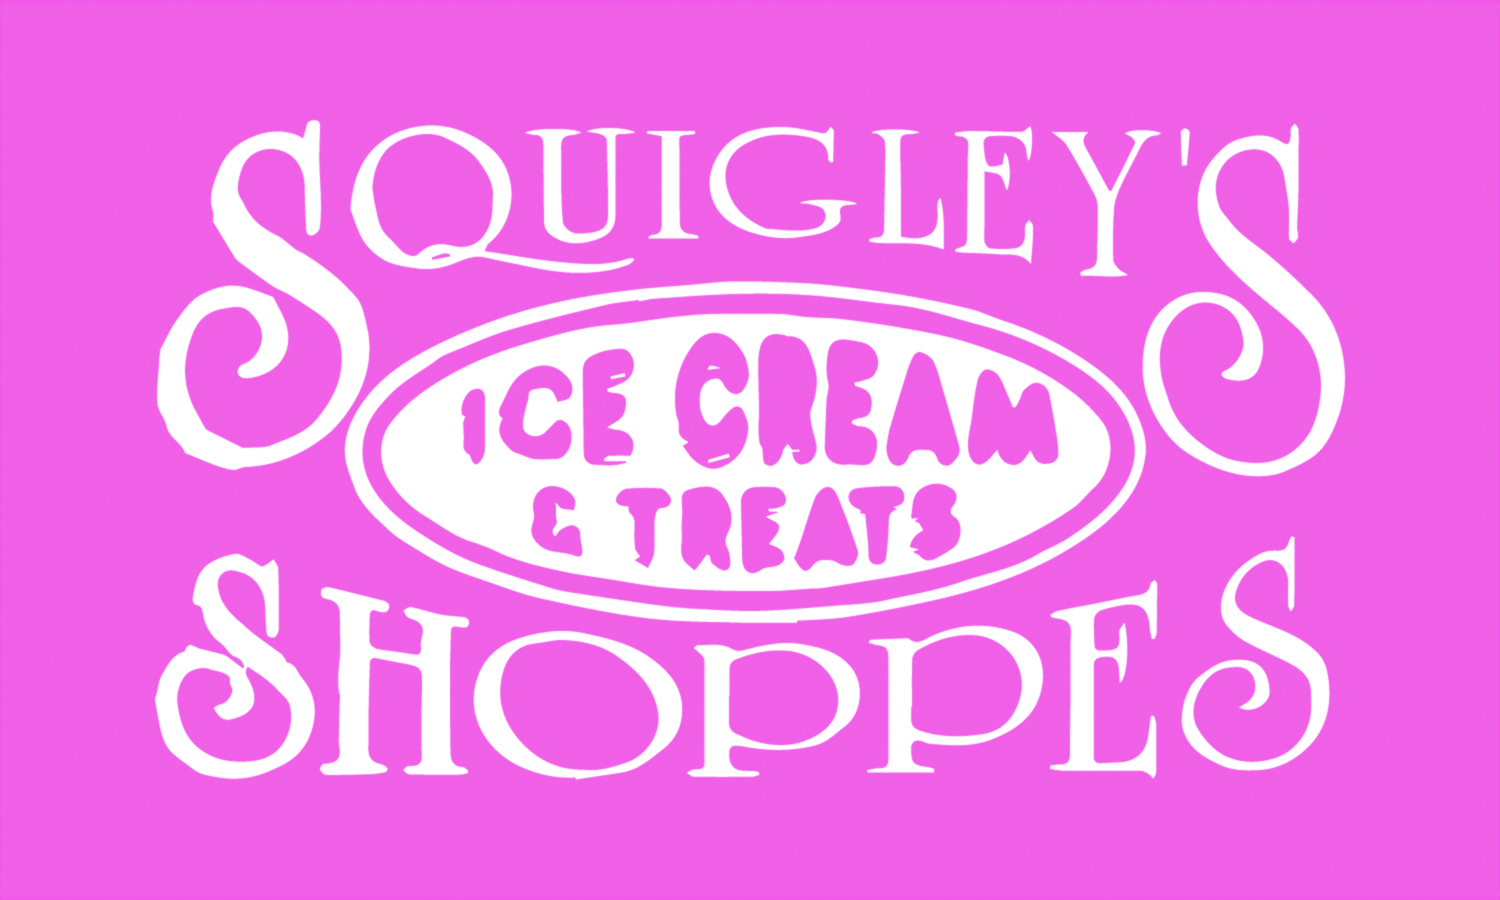 Squigley's® Ice Cream & Treats